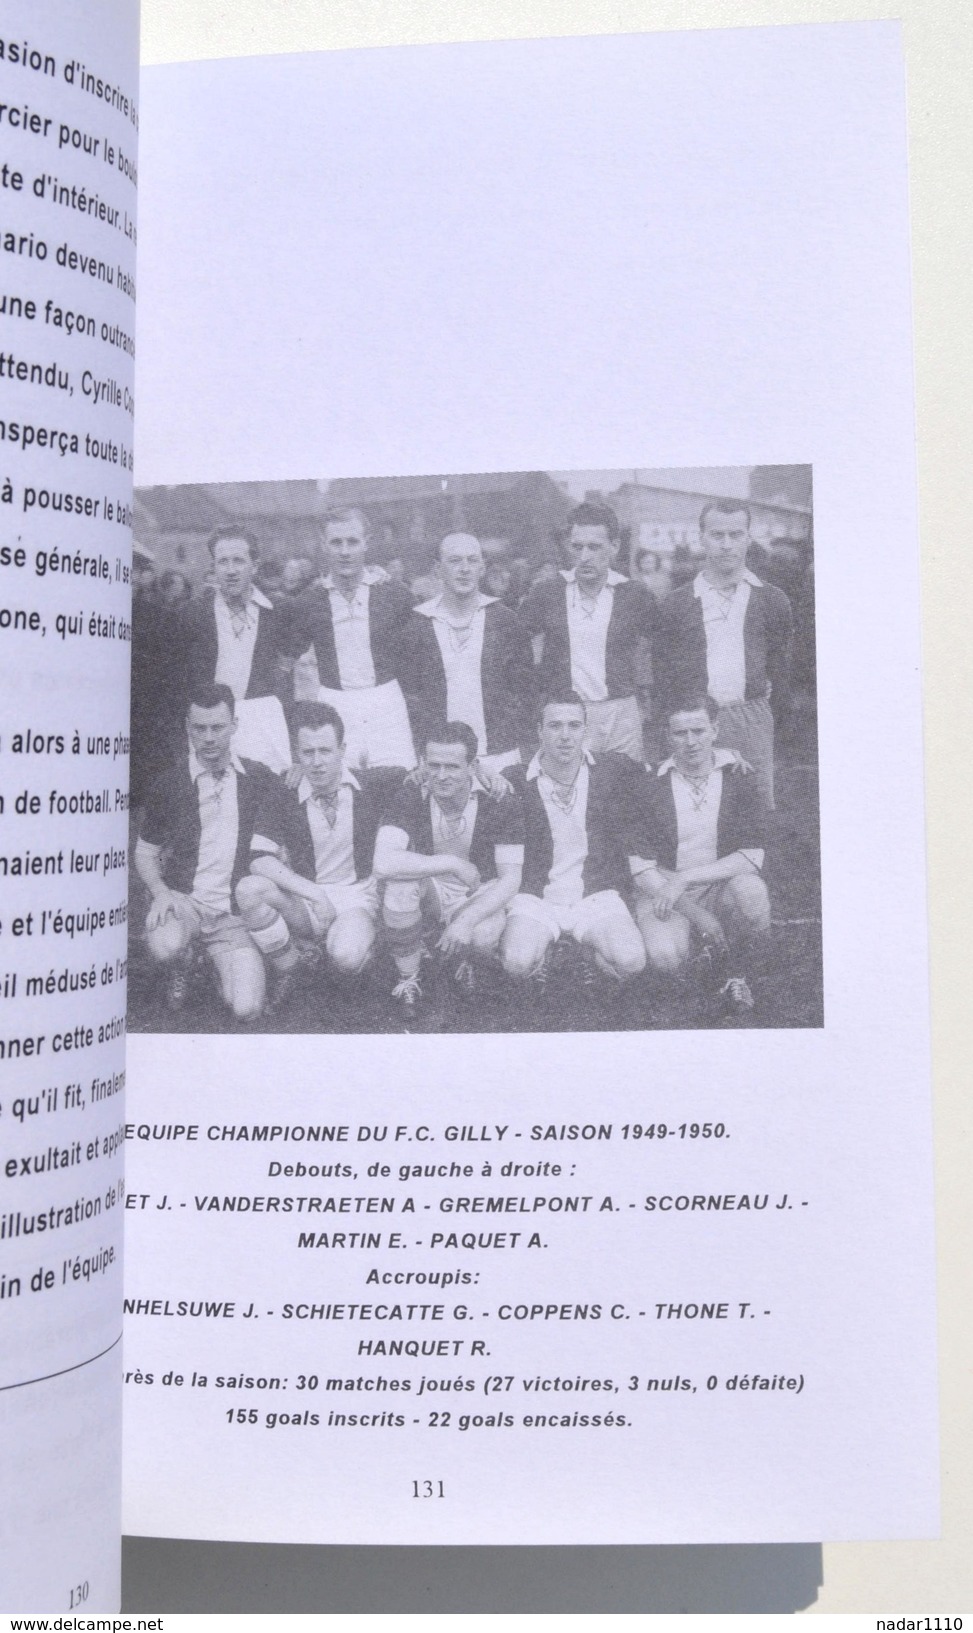 Cent ans de FOOTBALL à GILLY - Julien Tonneel - Cercle d'Histoire de Gilly, 1996